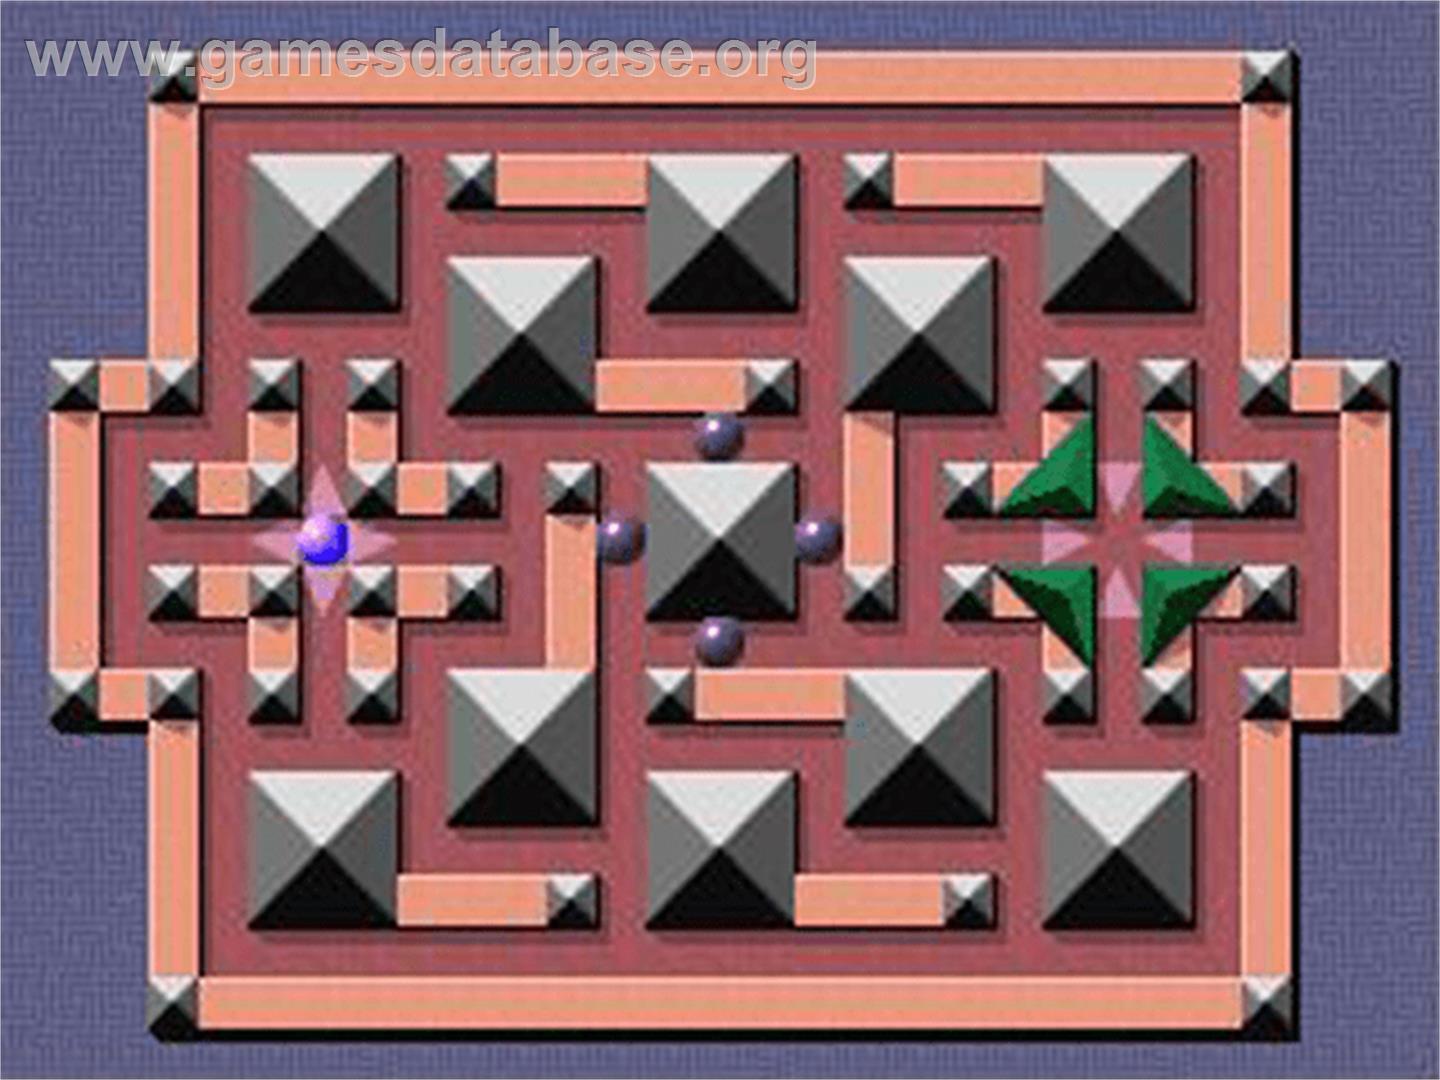 Mega Maze - Philips CD-i - Artwork - In Game